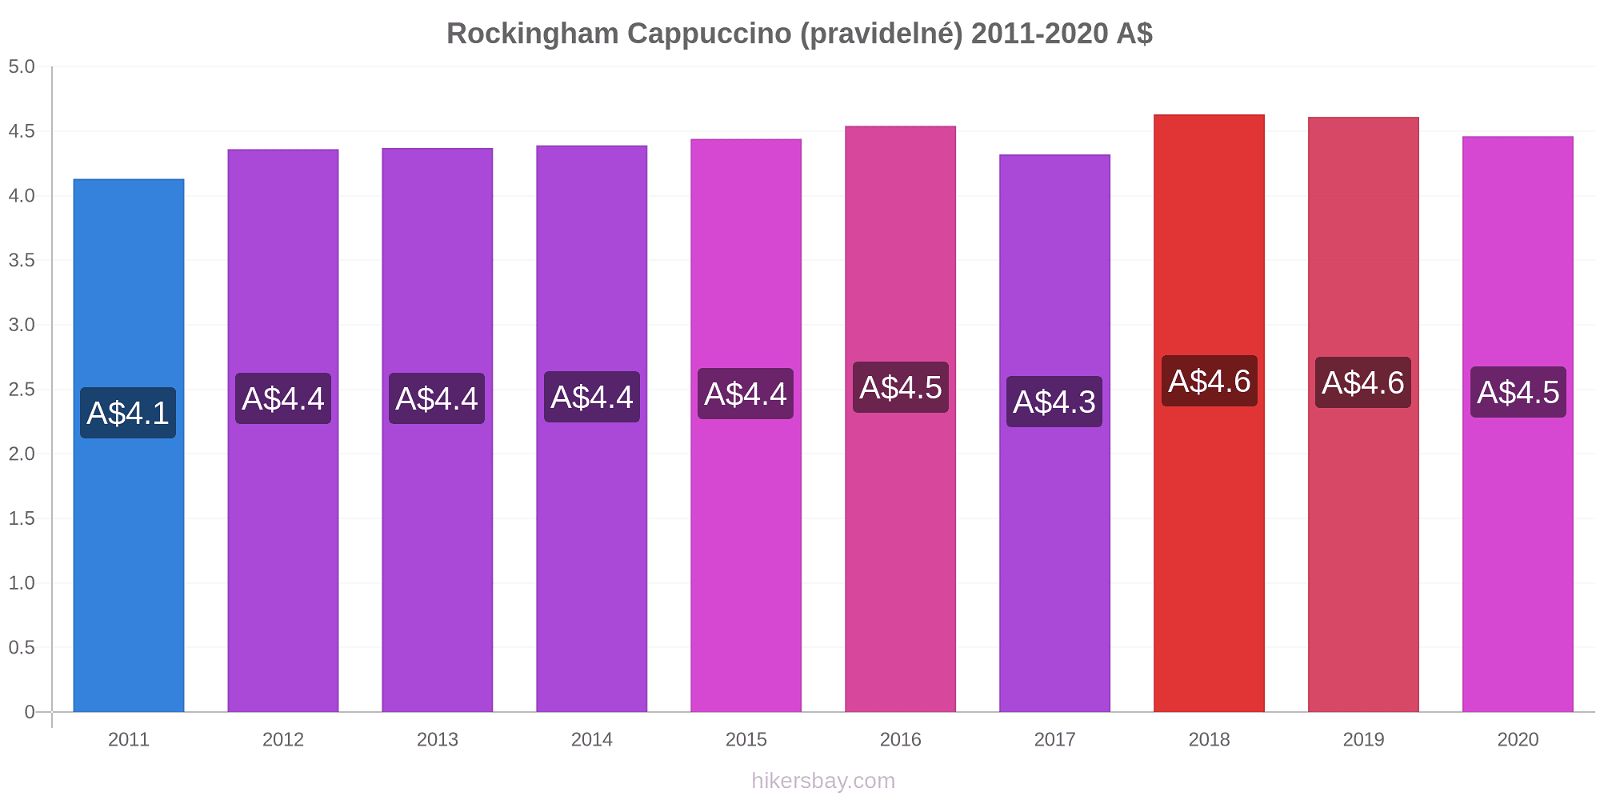 Rockingham změny cen Cappuccino (pravidelné) hikersbay.com